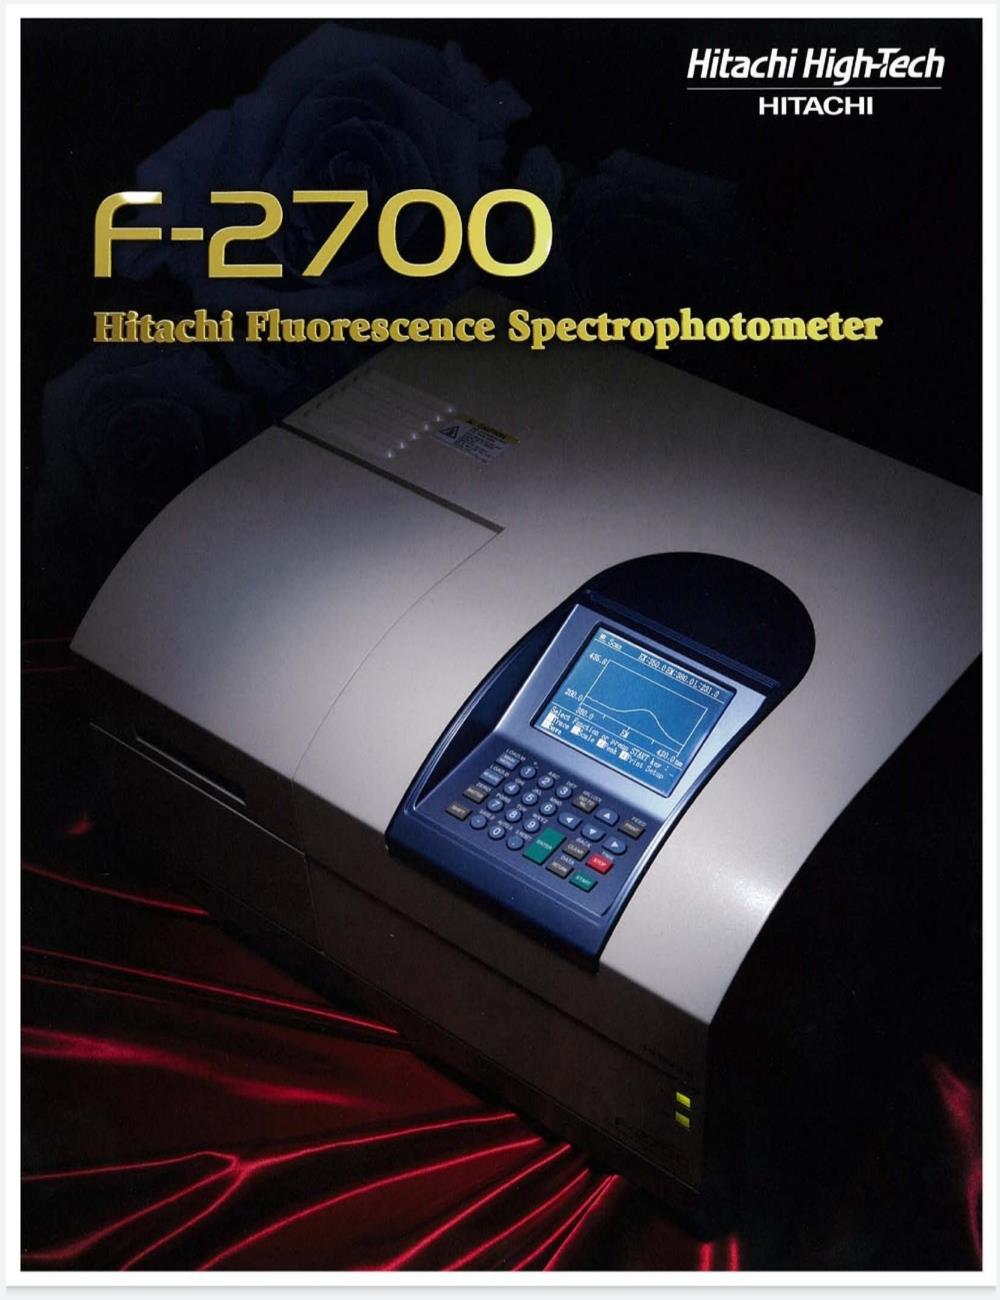 เครื่อง Fluorescence Spectrophotometer รุ่น F-2700 ยี่ห้อ HITACHI ประเทศญี่ปุ่น,Fluorescence Spectrophotometer,Spectro,fluorescence,,Hitachi,Engineering and Consulting/Laboratories